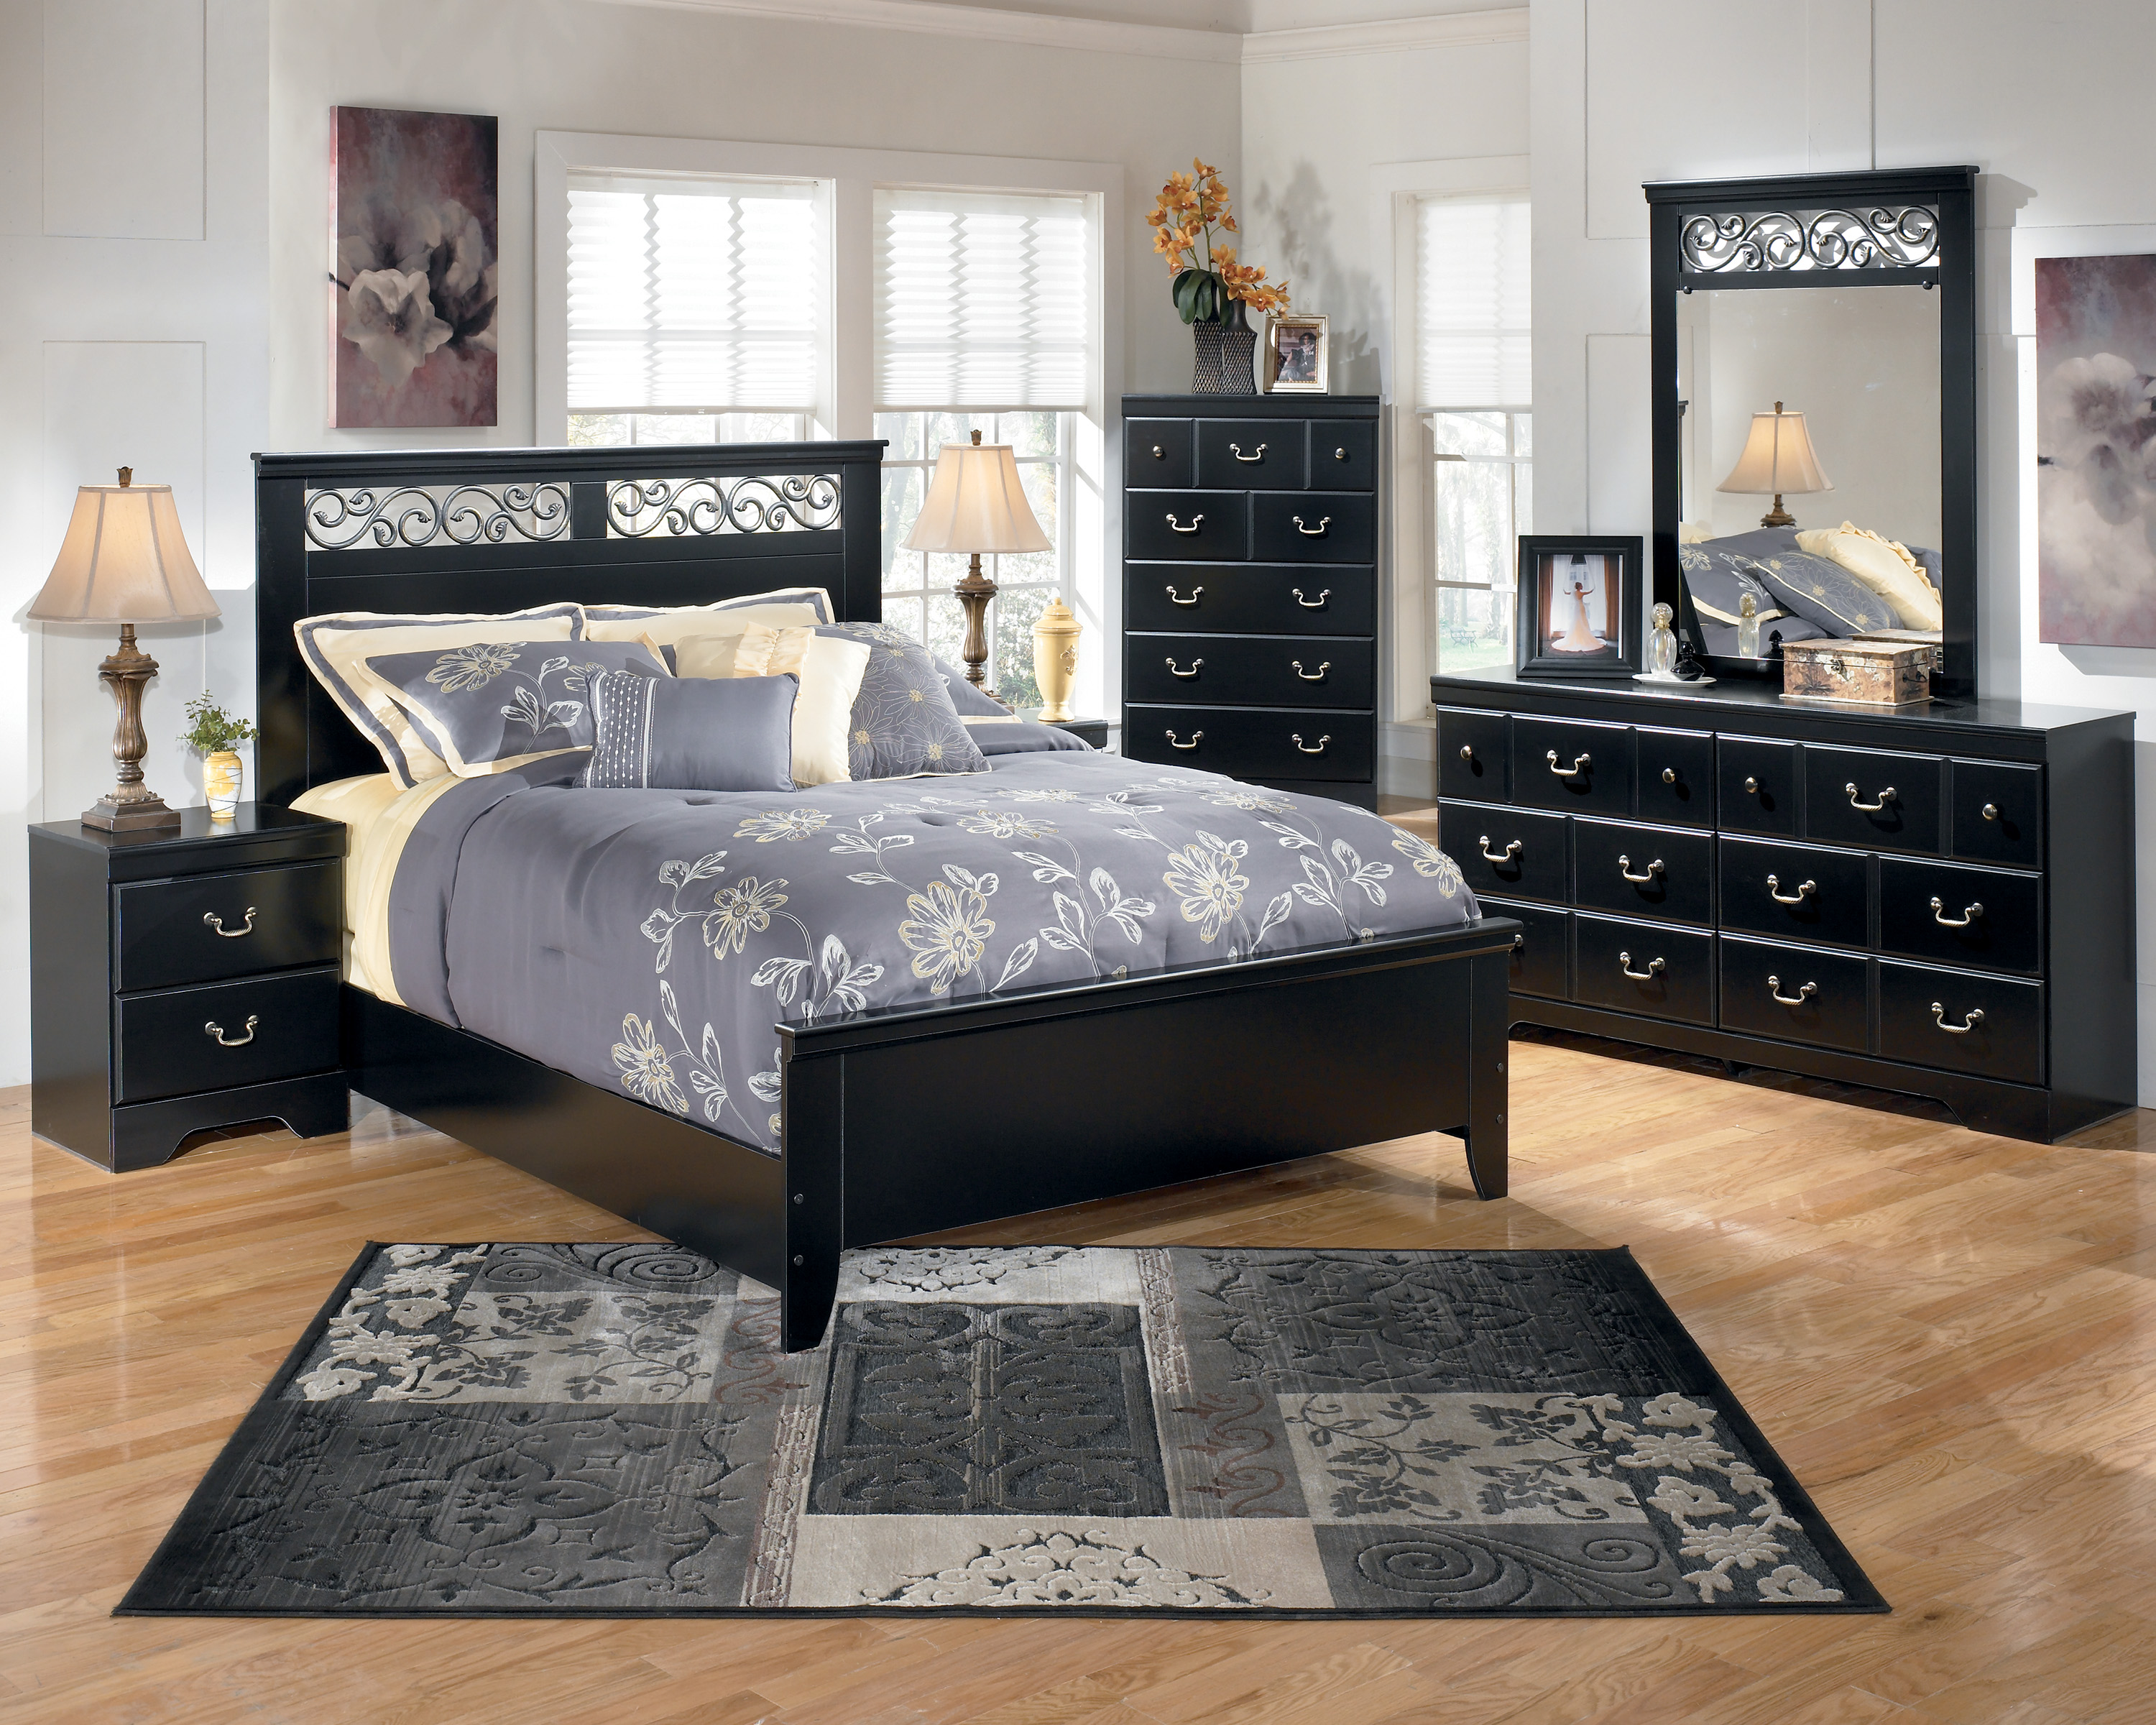 black bedroom furniture ikea